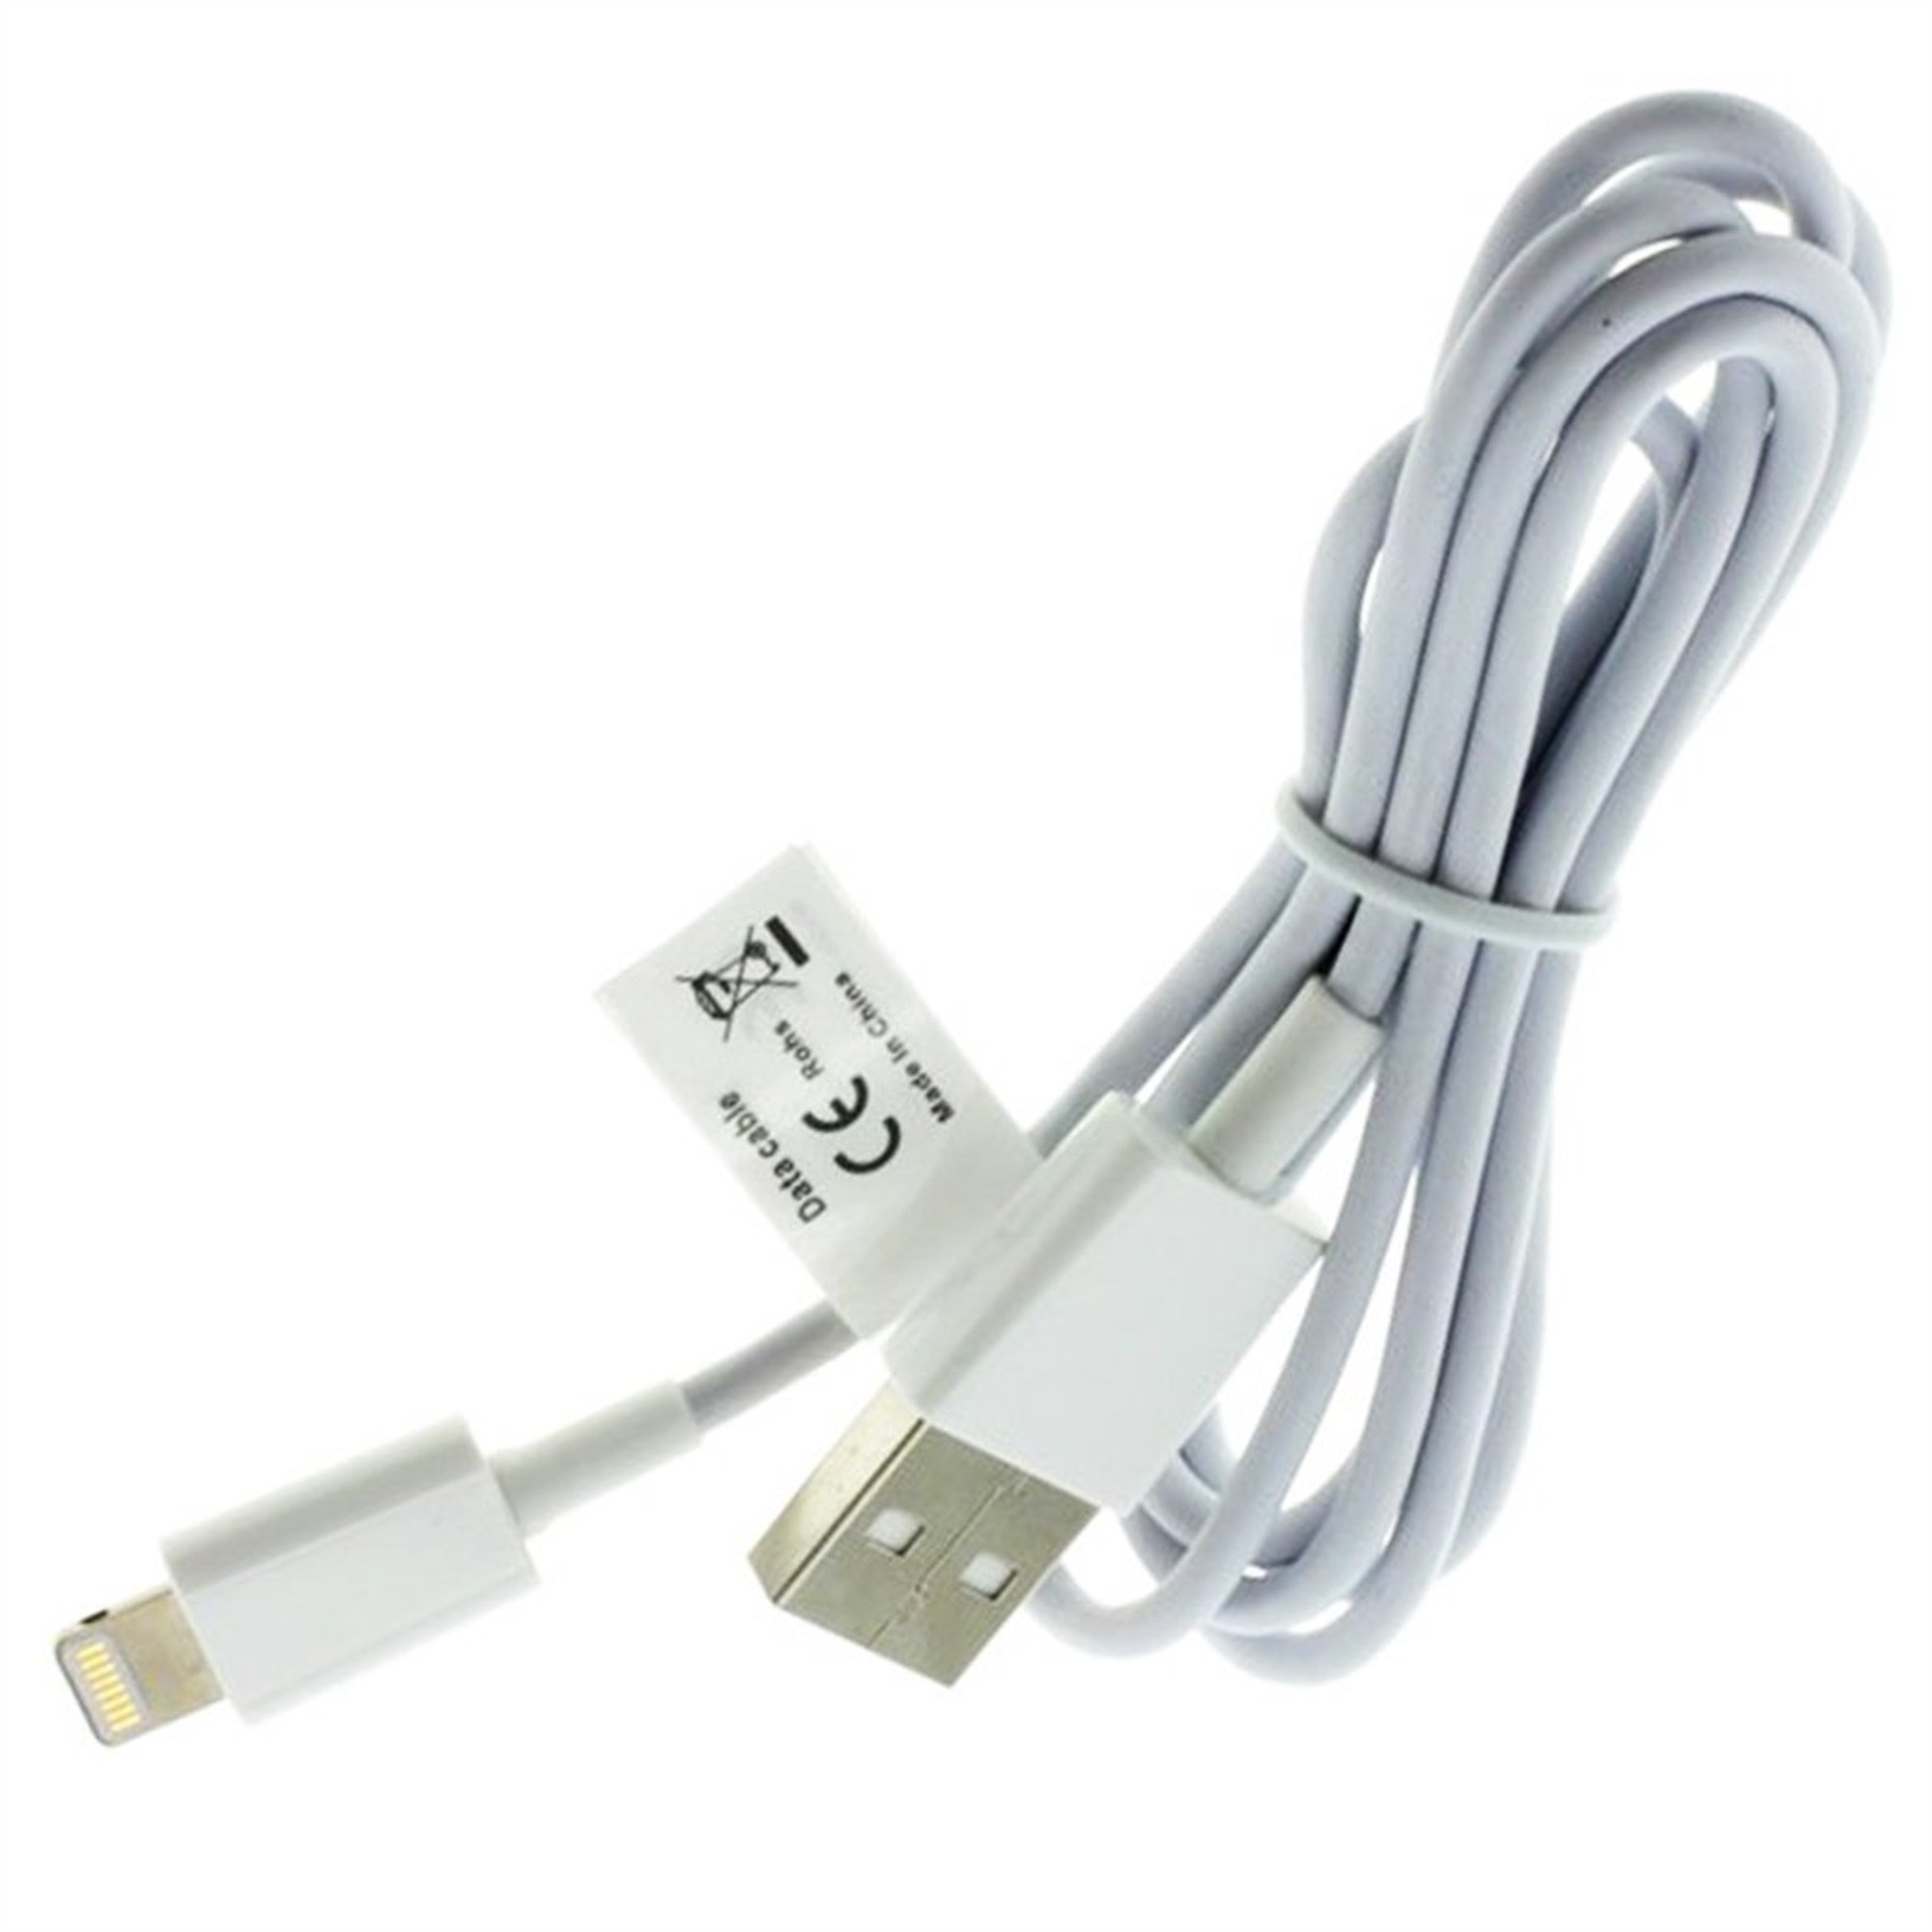 Apple iPhone 7, 6, 5, iPad 2,3 ve Lightning konektörlü cihazlar için USB  senkronizasyon ve